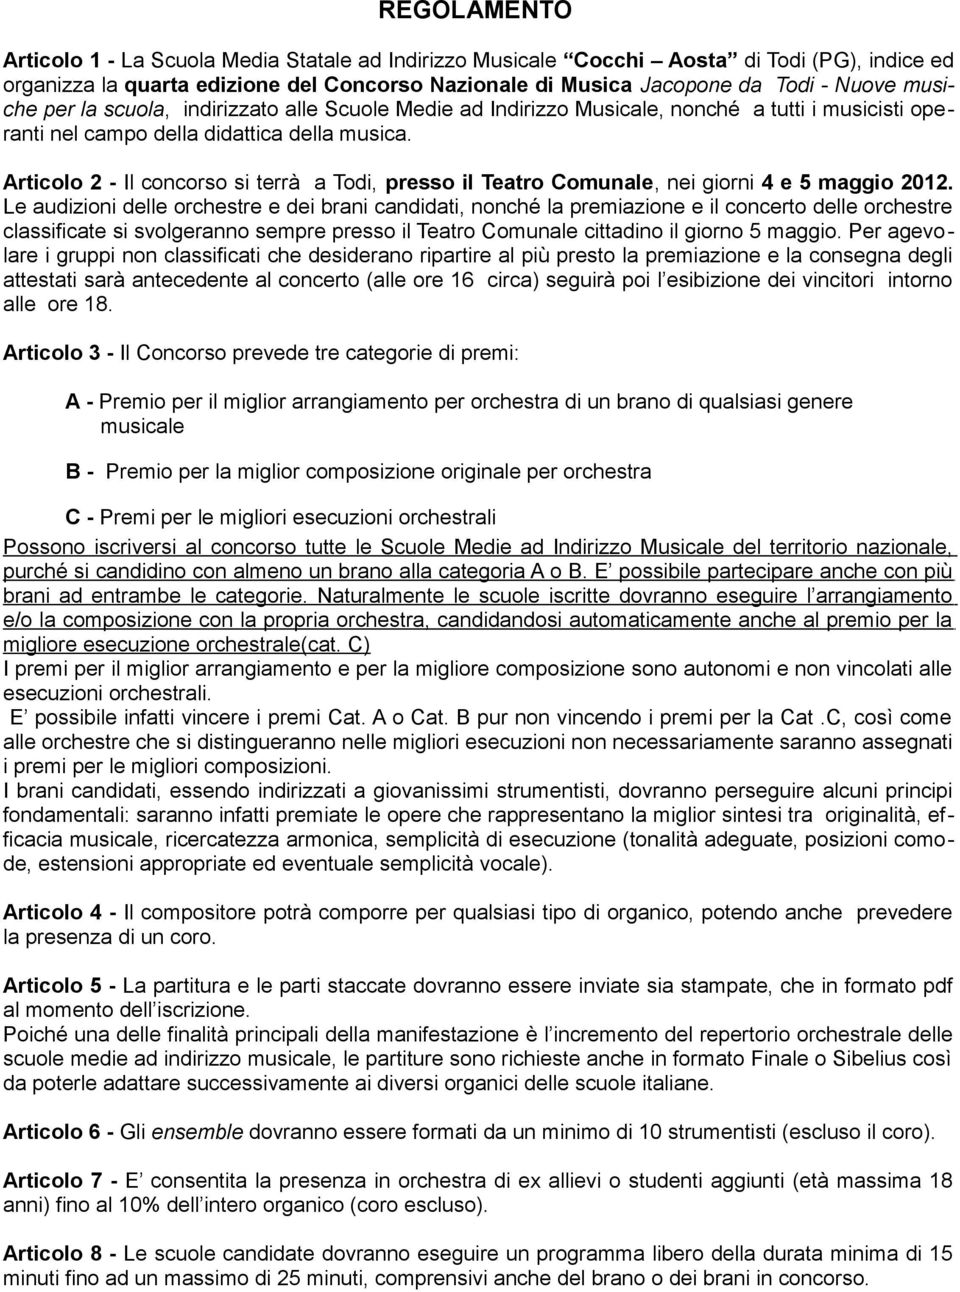 Articolo 2 - Il concorso si terrà a Todi, presso il Teatro Comunale, nei giorni 4 e 5 maggio 2012.